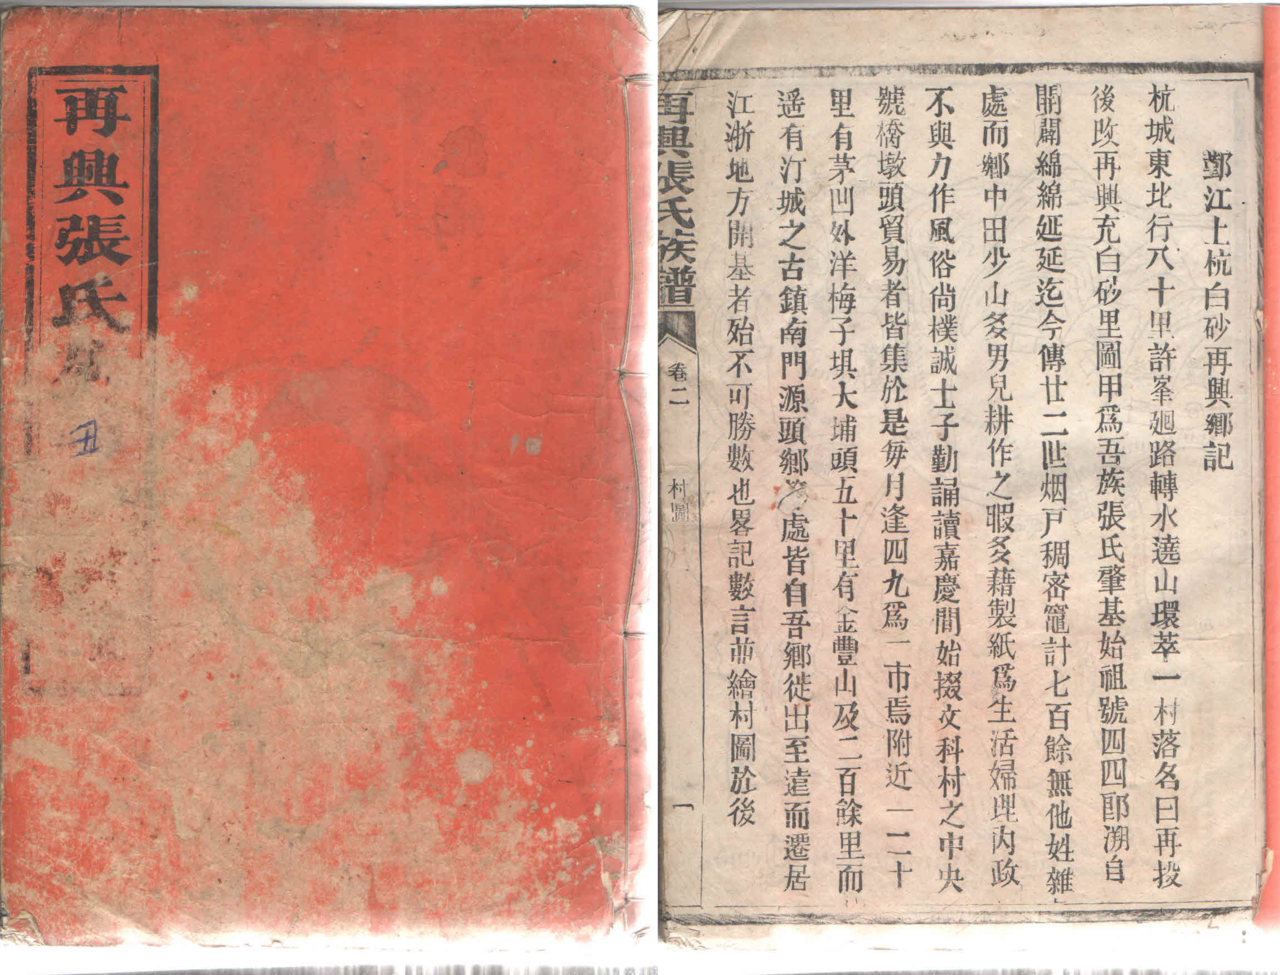 始編於清朝中期的《再興張氏族譜》